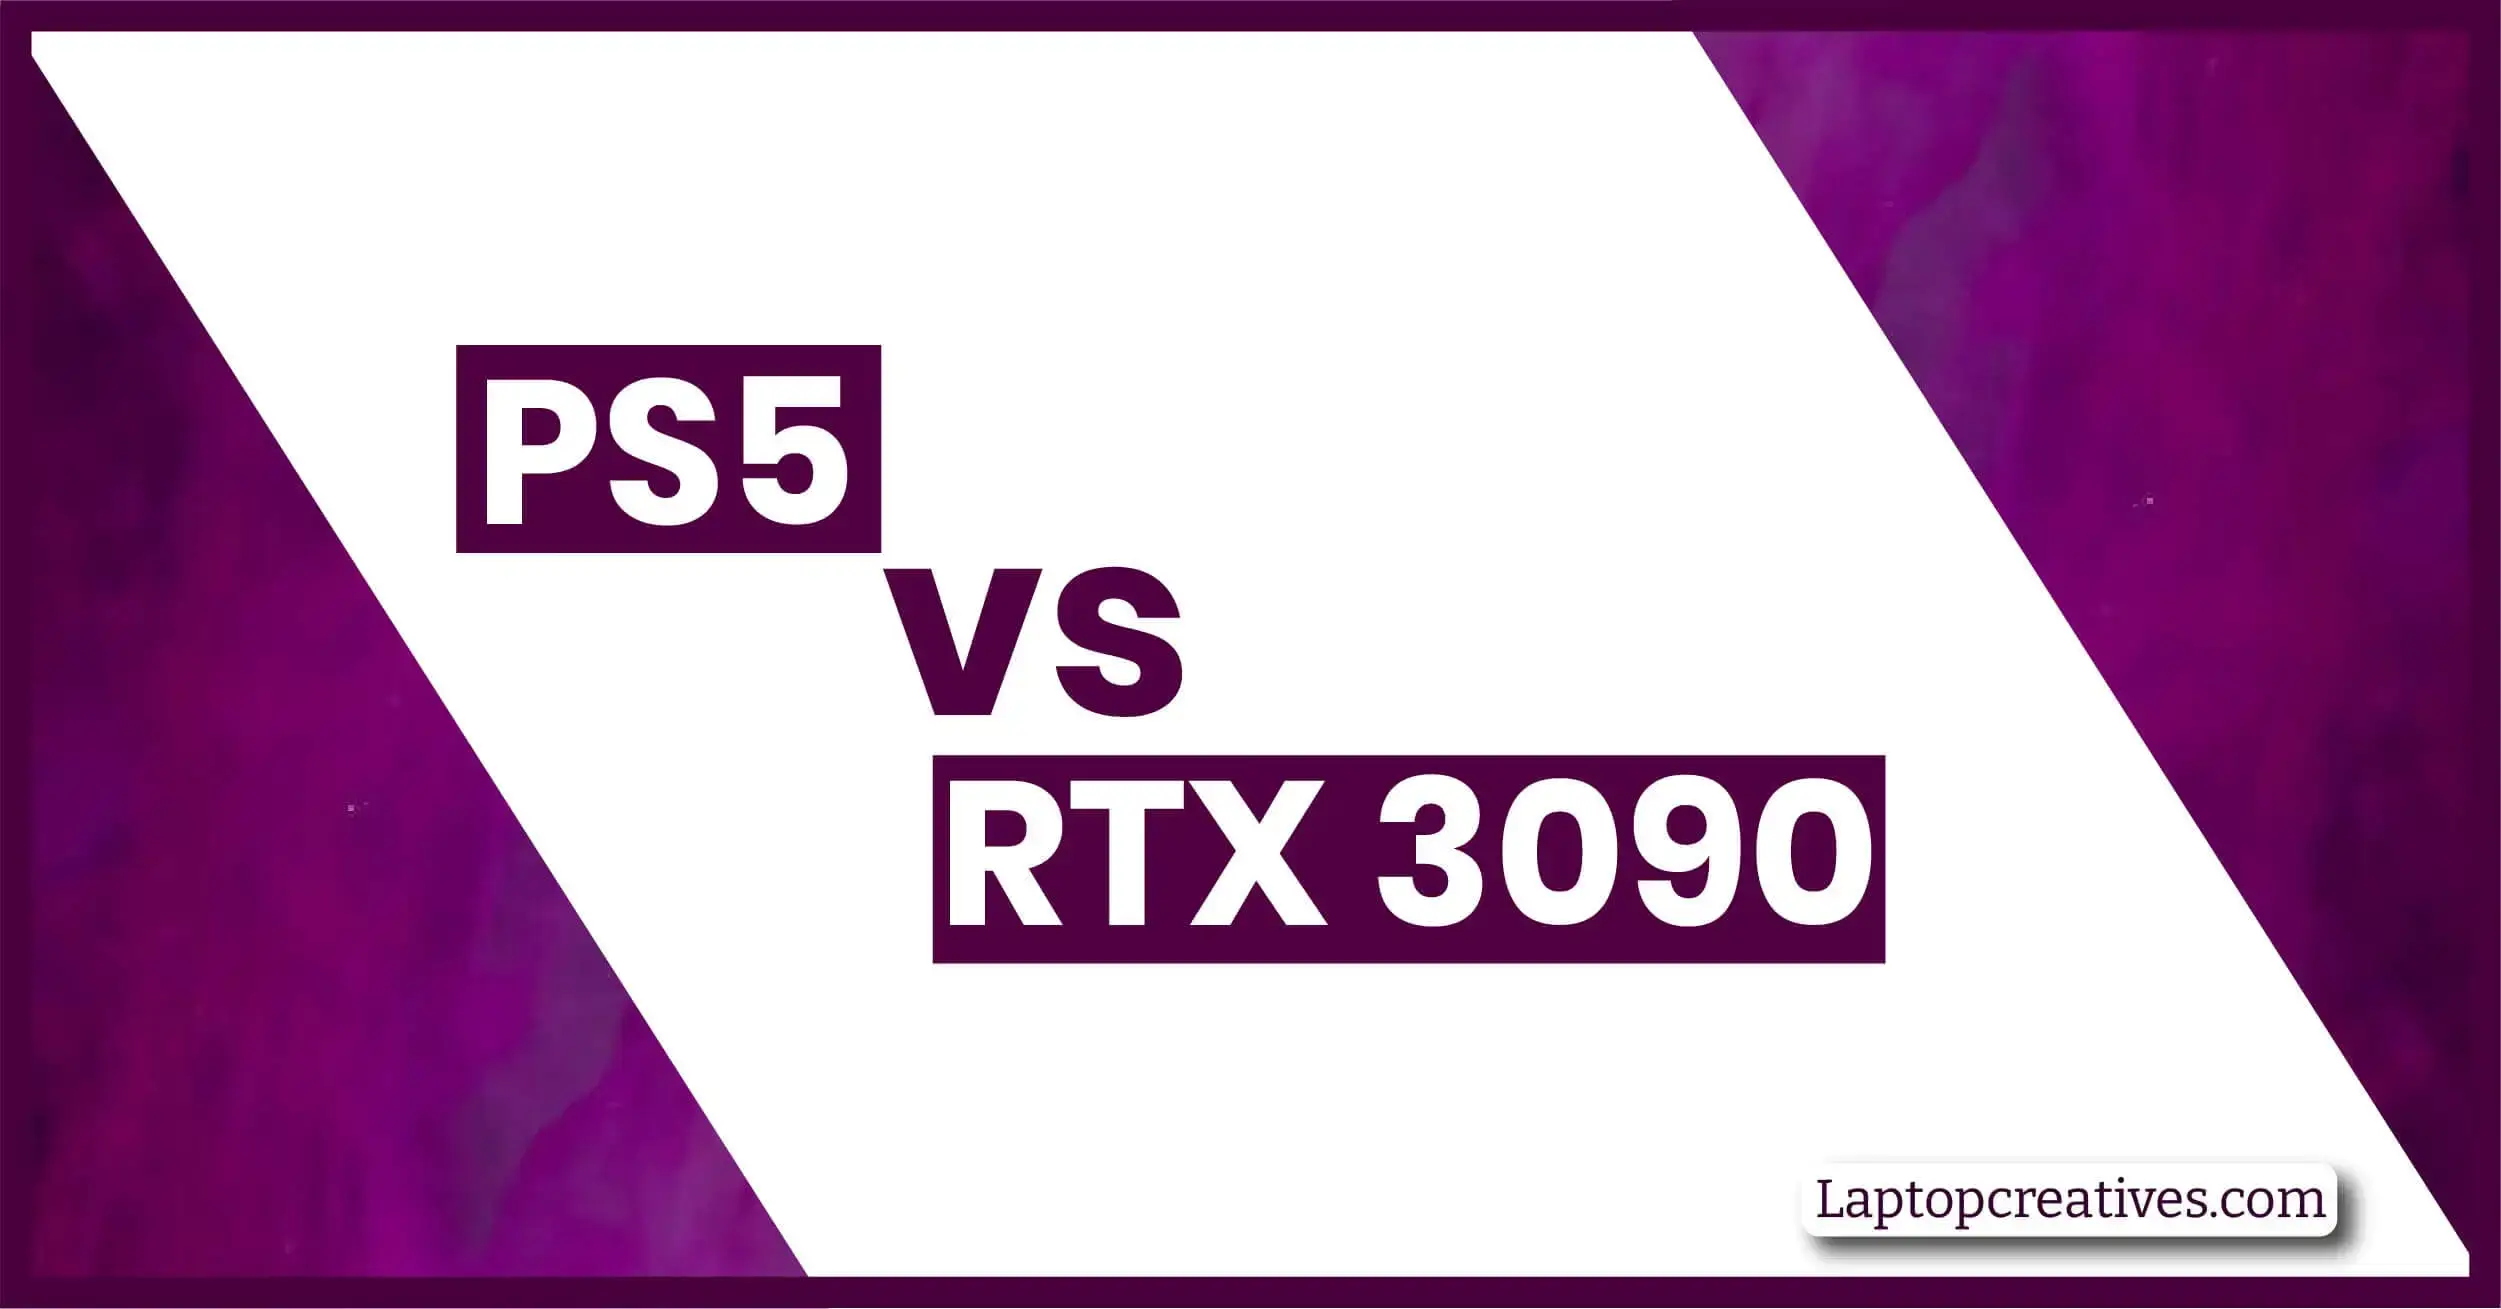 PS5 vs RTX 3090